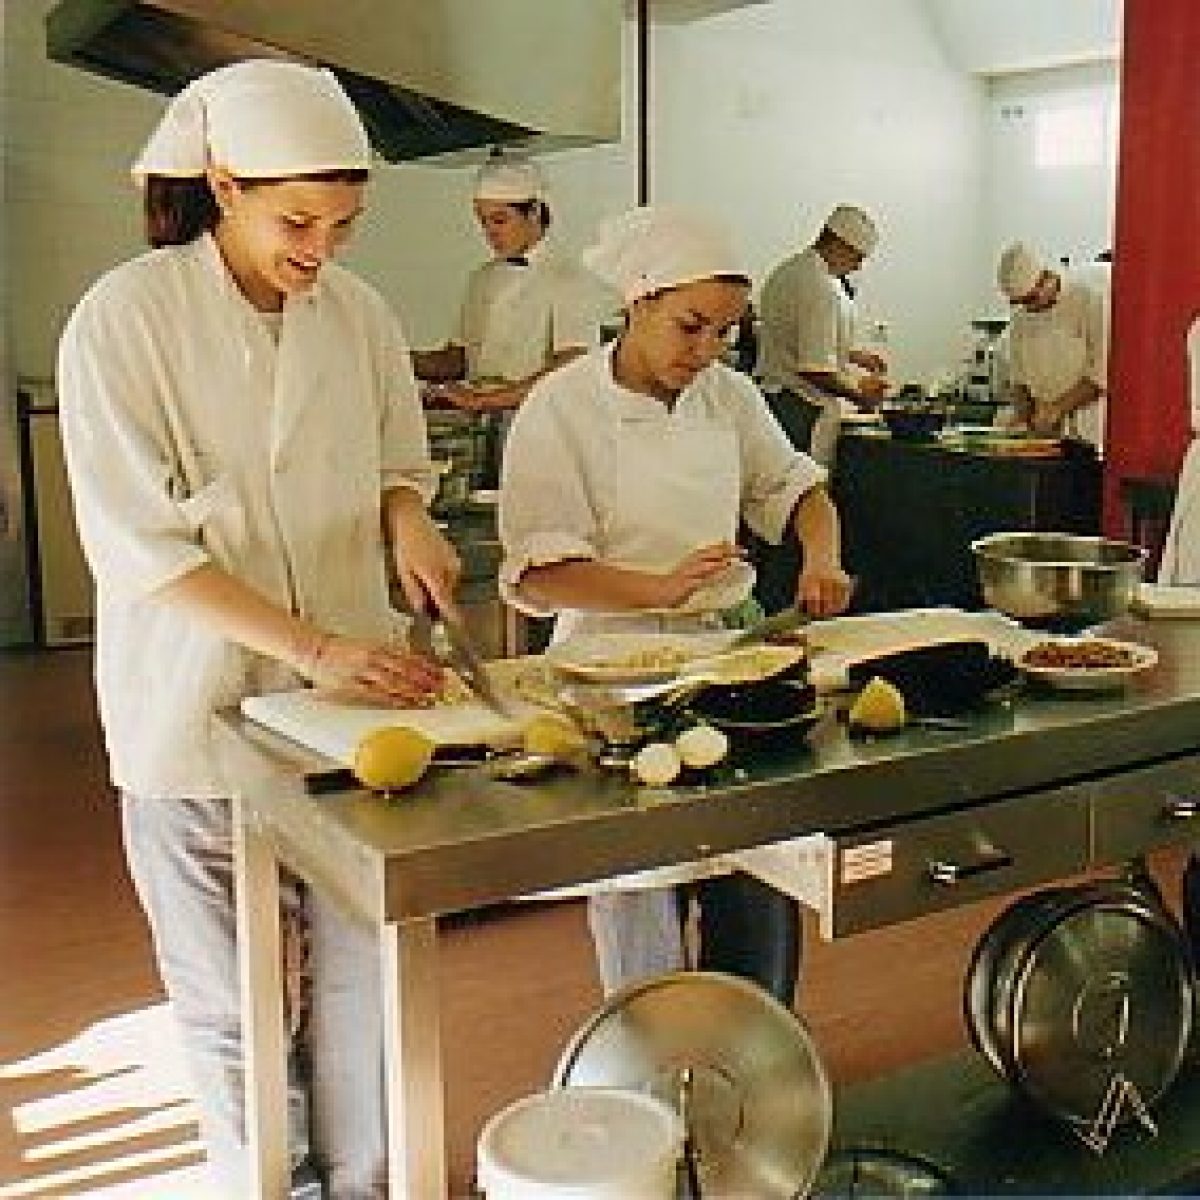 Ofertas de trabajo de ayudante de cocina en Segovia y Las Palmas